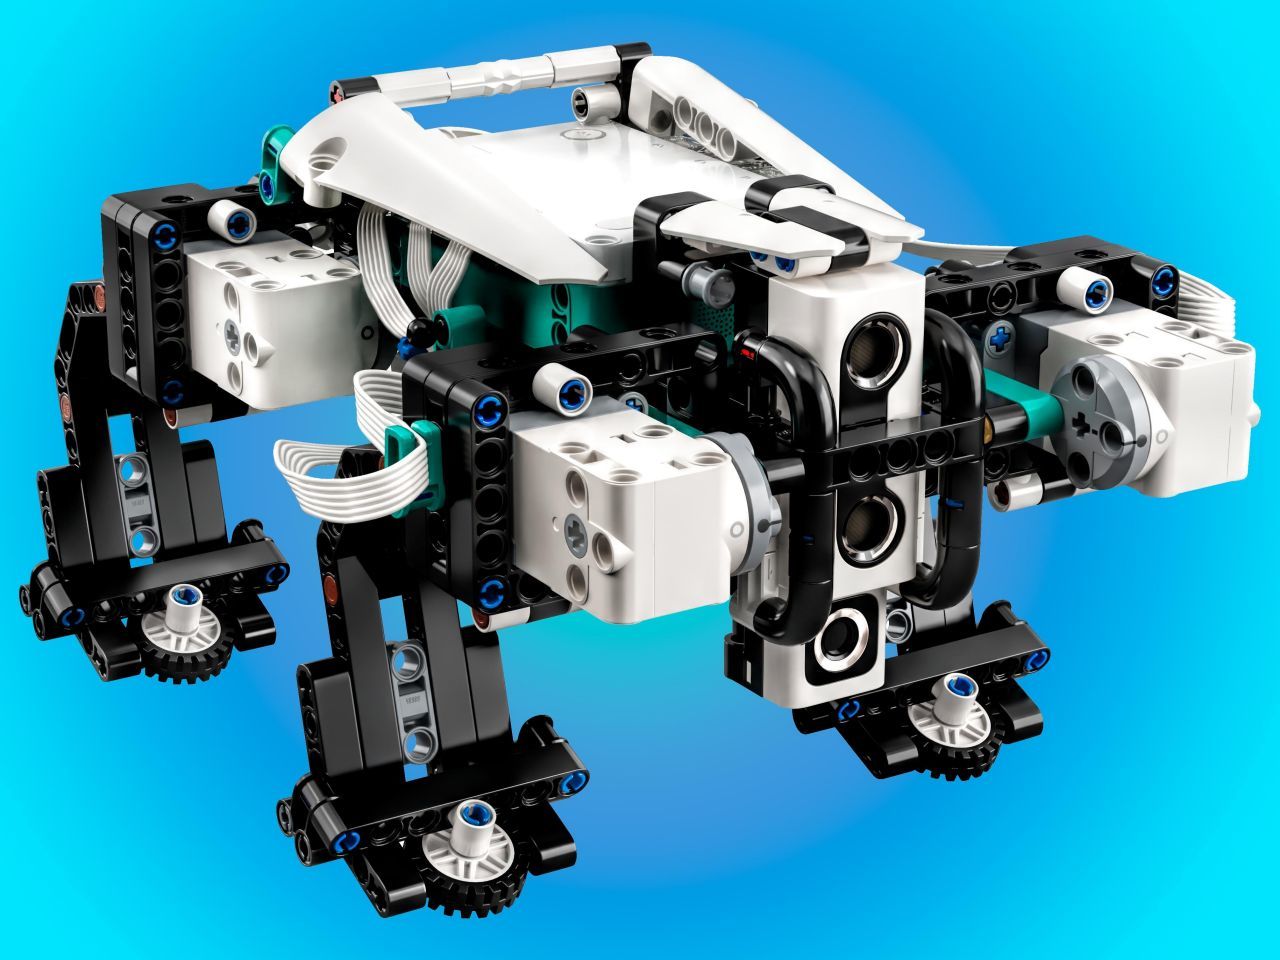 レゴ「マインドストーム」に7年ぶりの新ロボットキット「Robot 